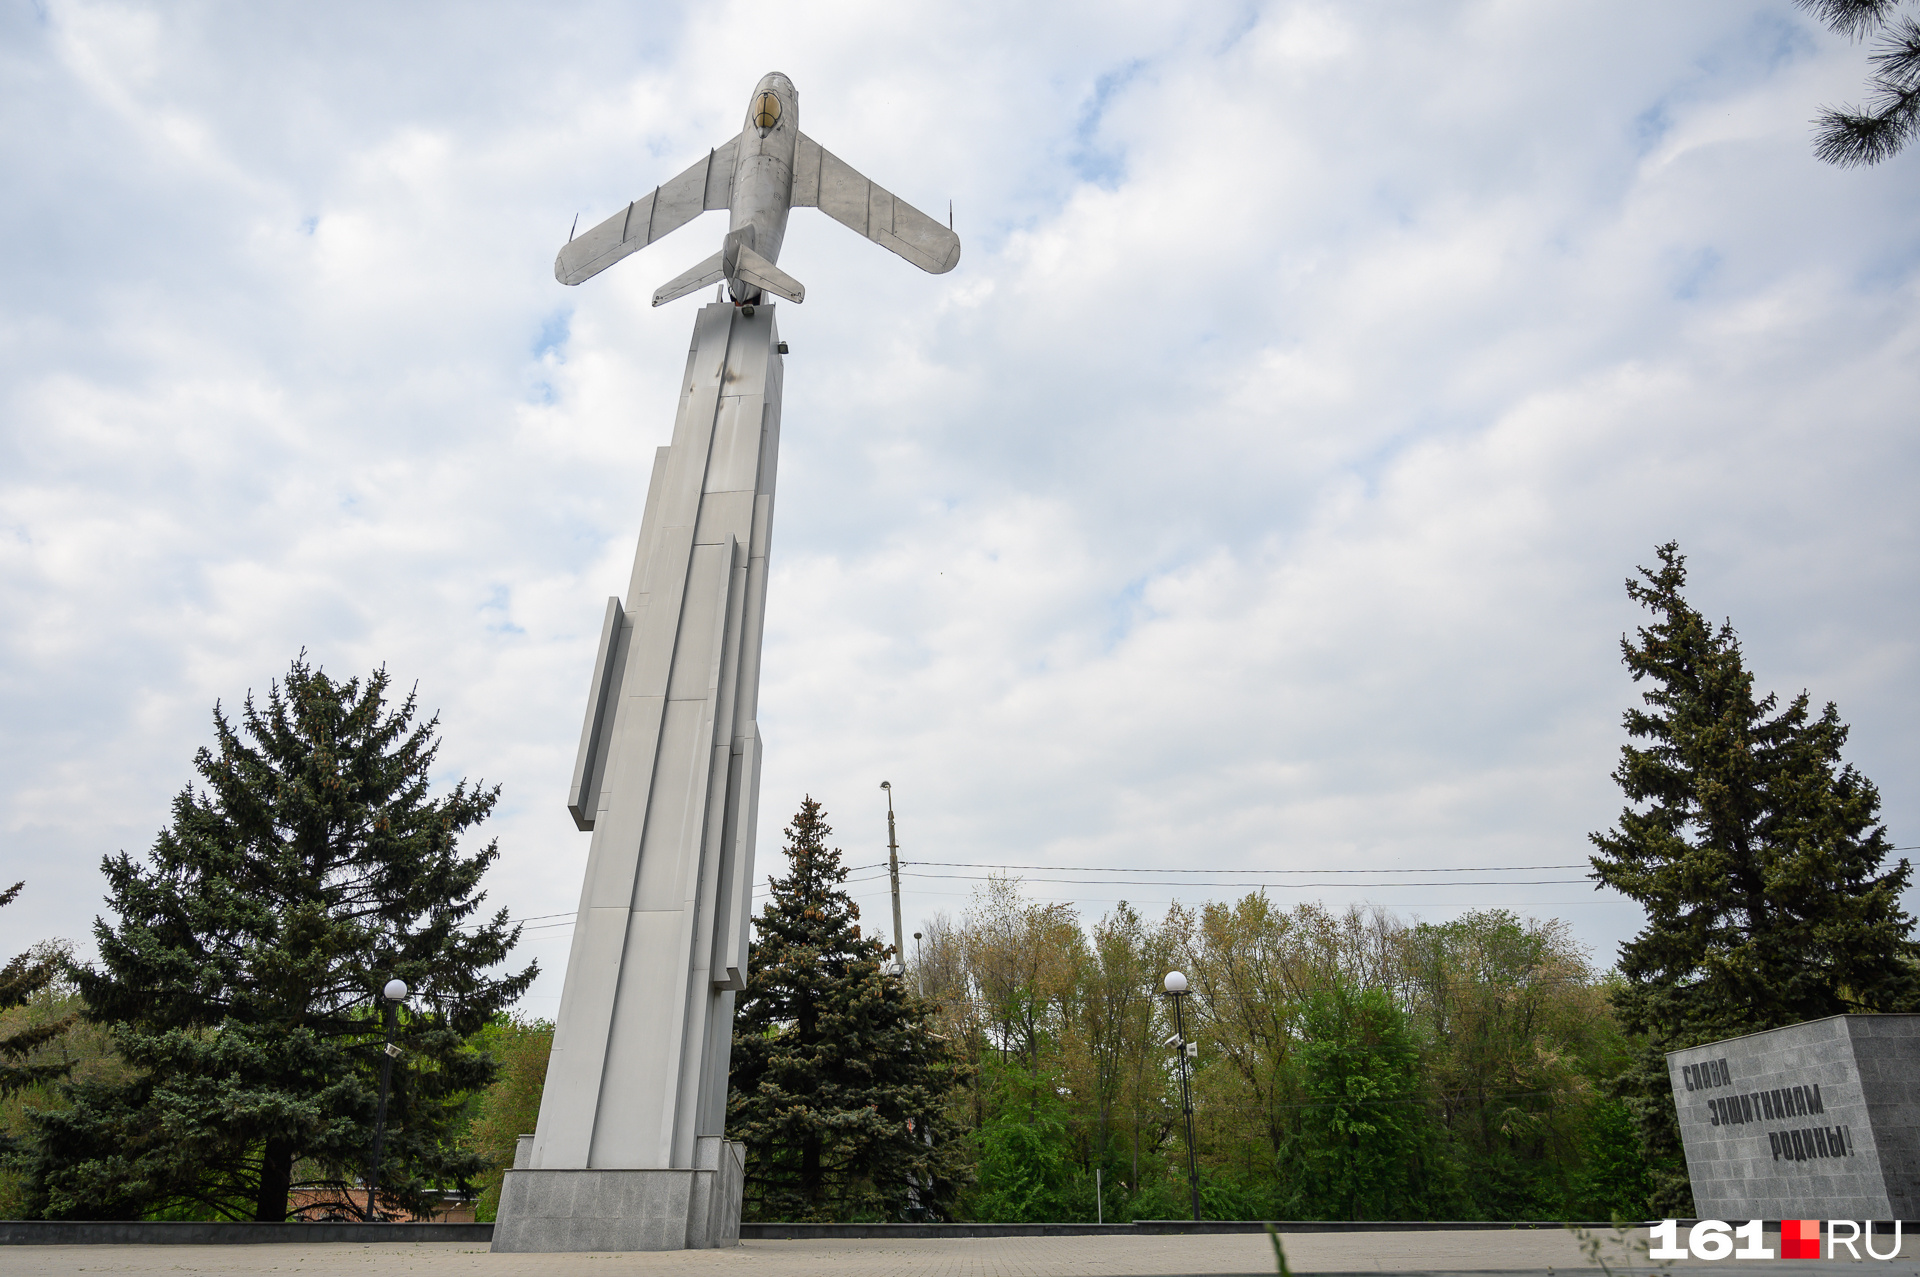 Стела с самолетом МиГ-17 — часть мемориала советским летчикам, сражавшимся под Ростовом в годы Великой Отечественной войны. Памятник открыт 8 мая 1972 года, находится в парке Авиаторов